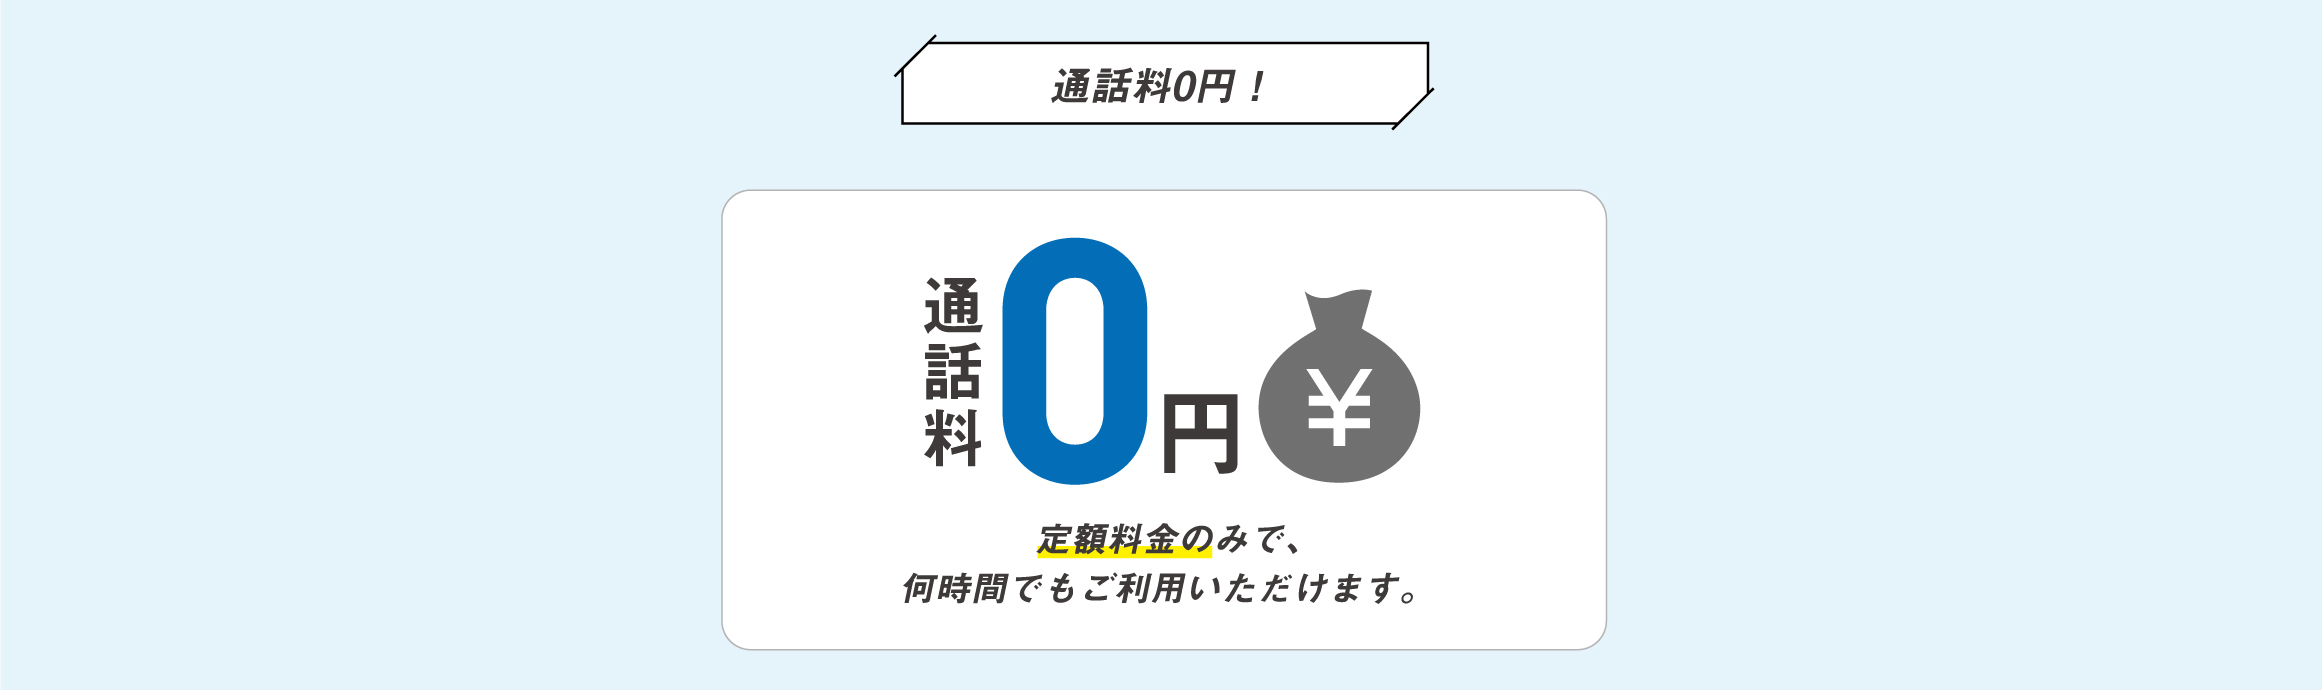 通話料0円